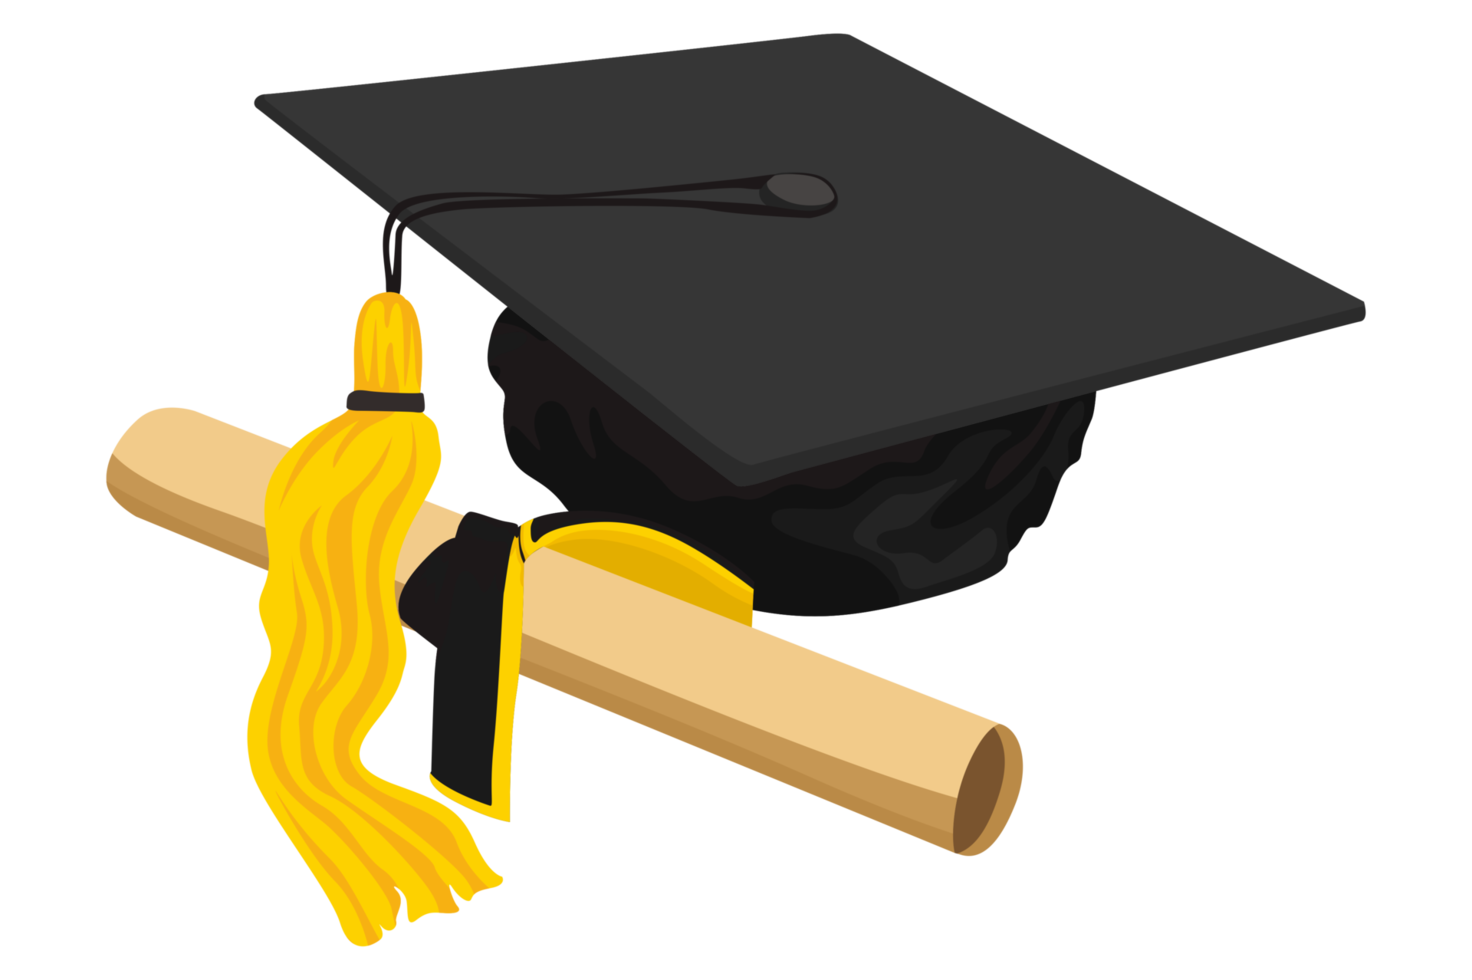 la laurea articolo - la laurea cappello e la laurea certificato rotolo png